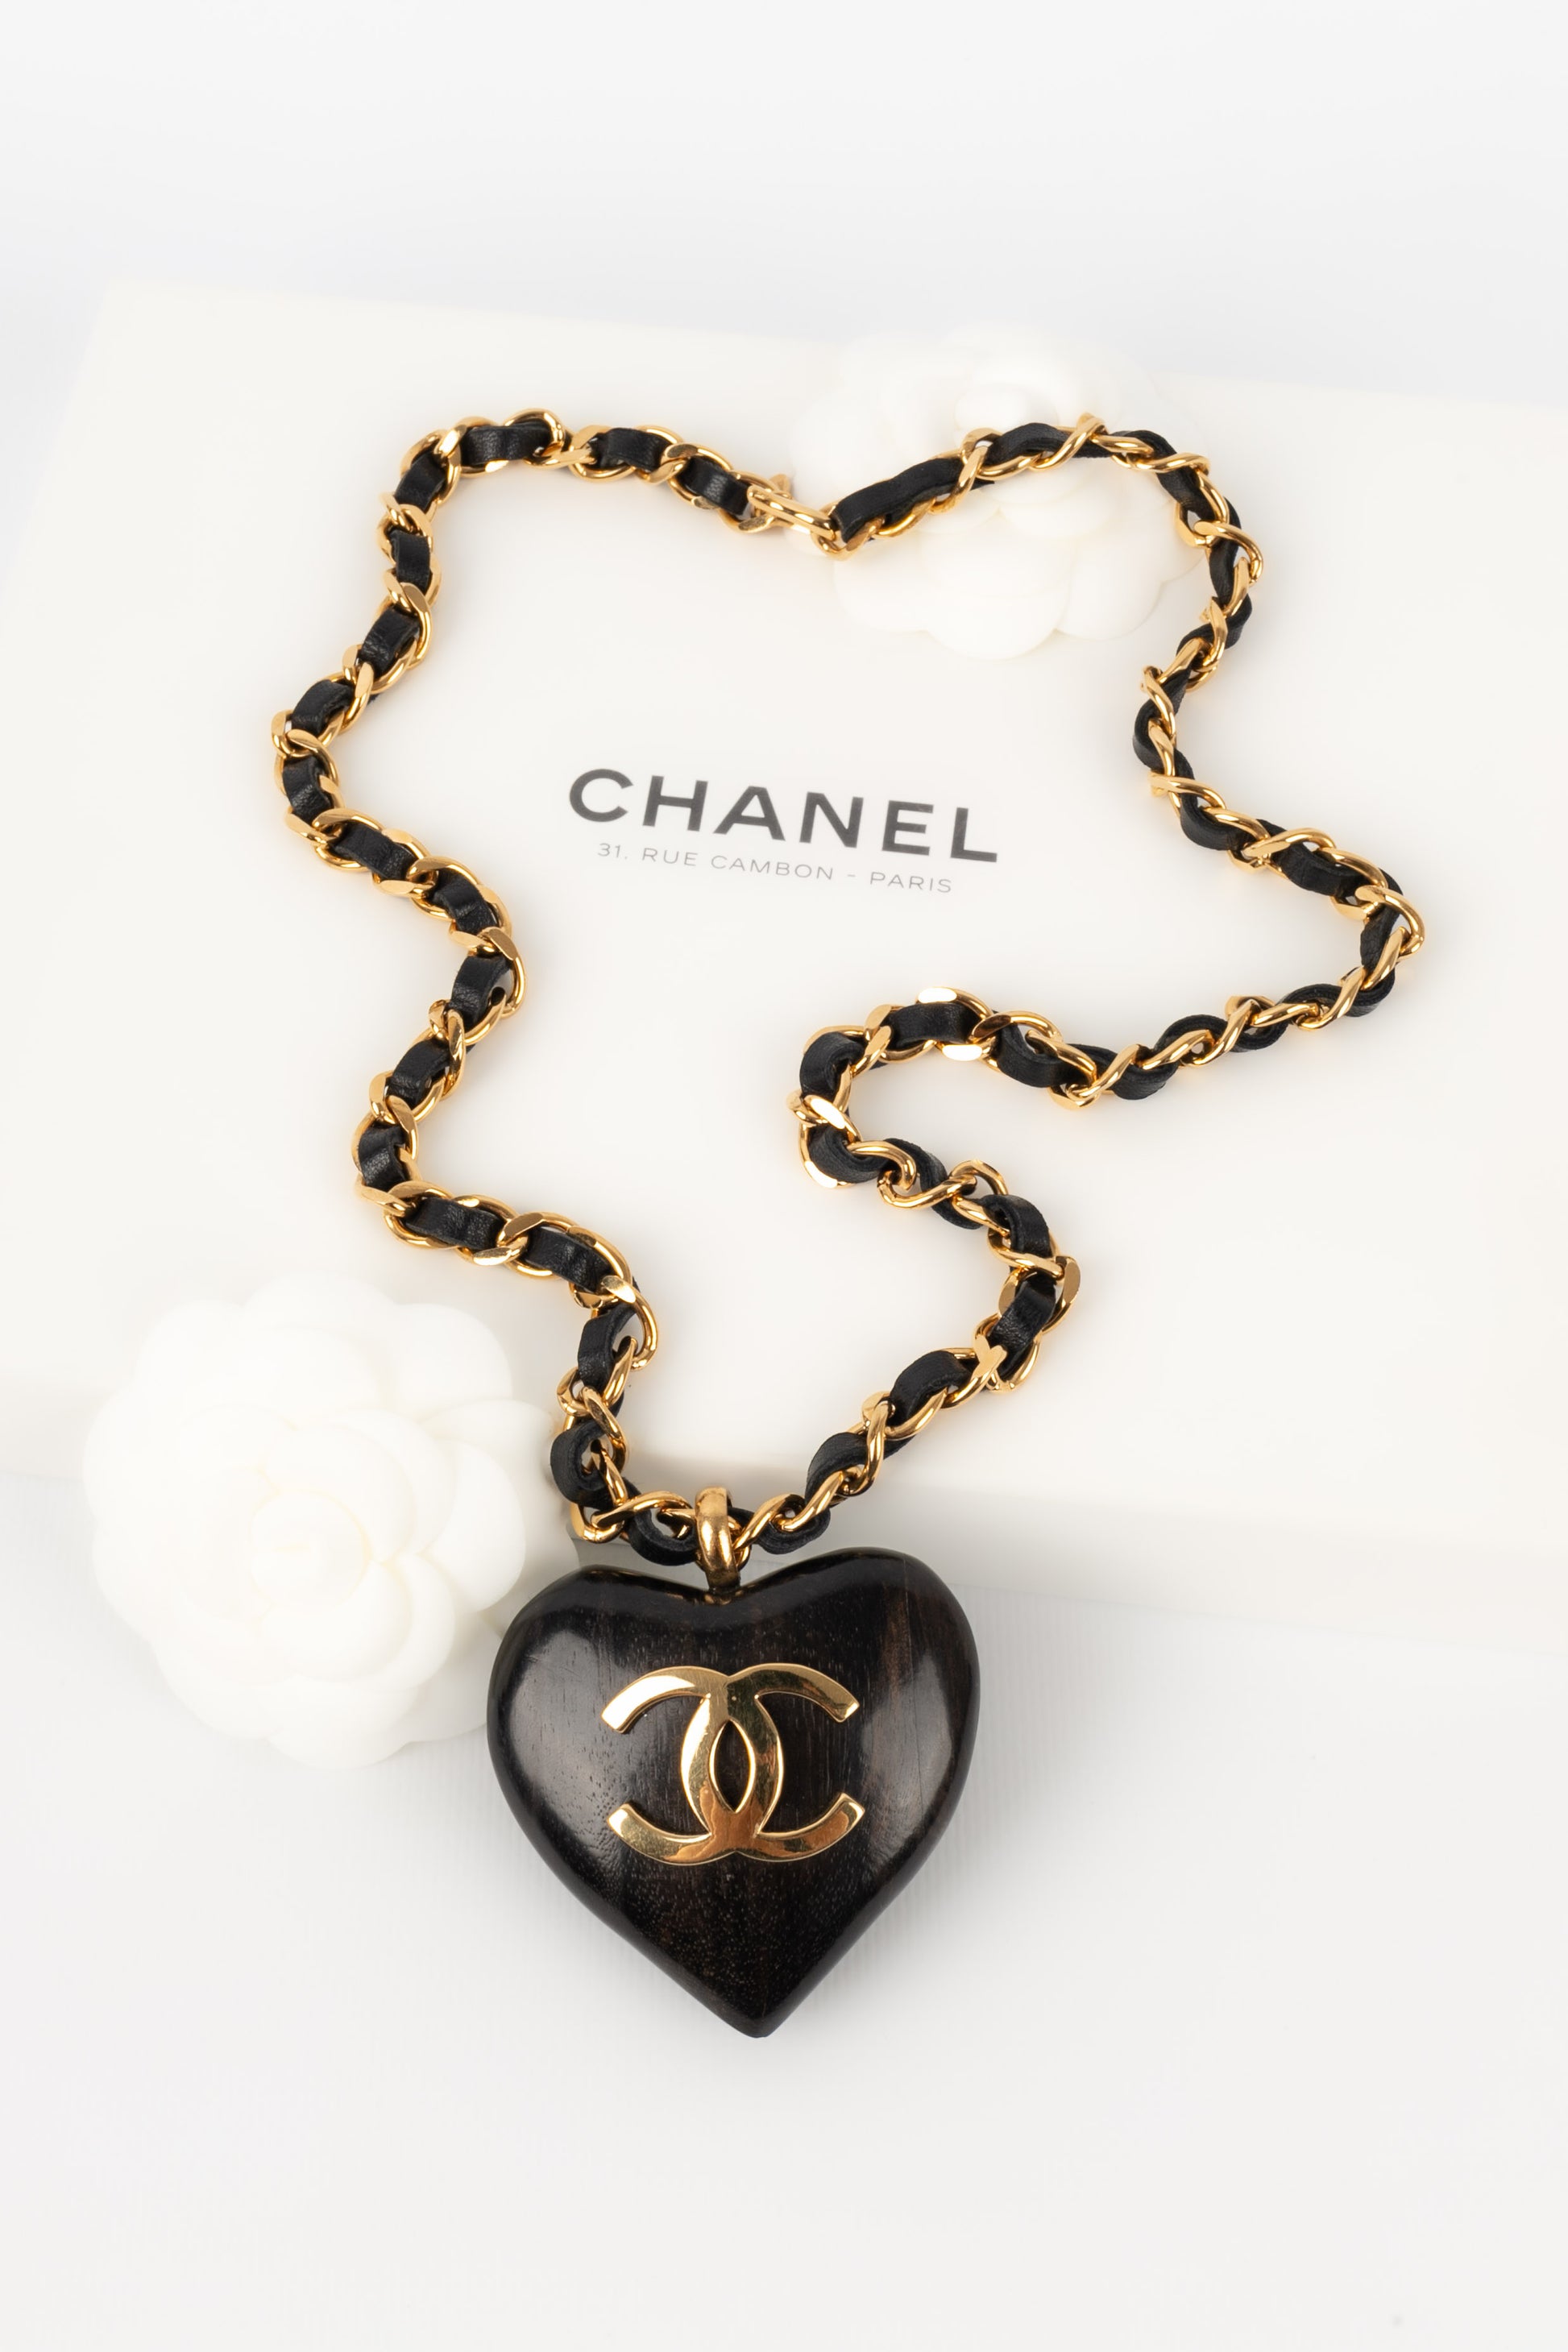 Repurposed Picola Mini Chanel Necklace - Dreamized